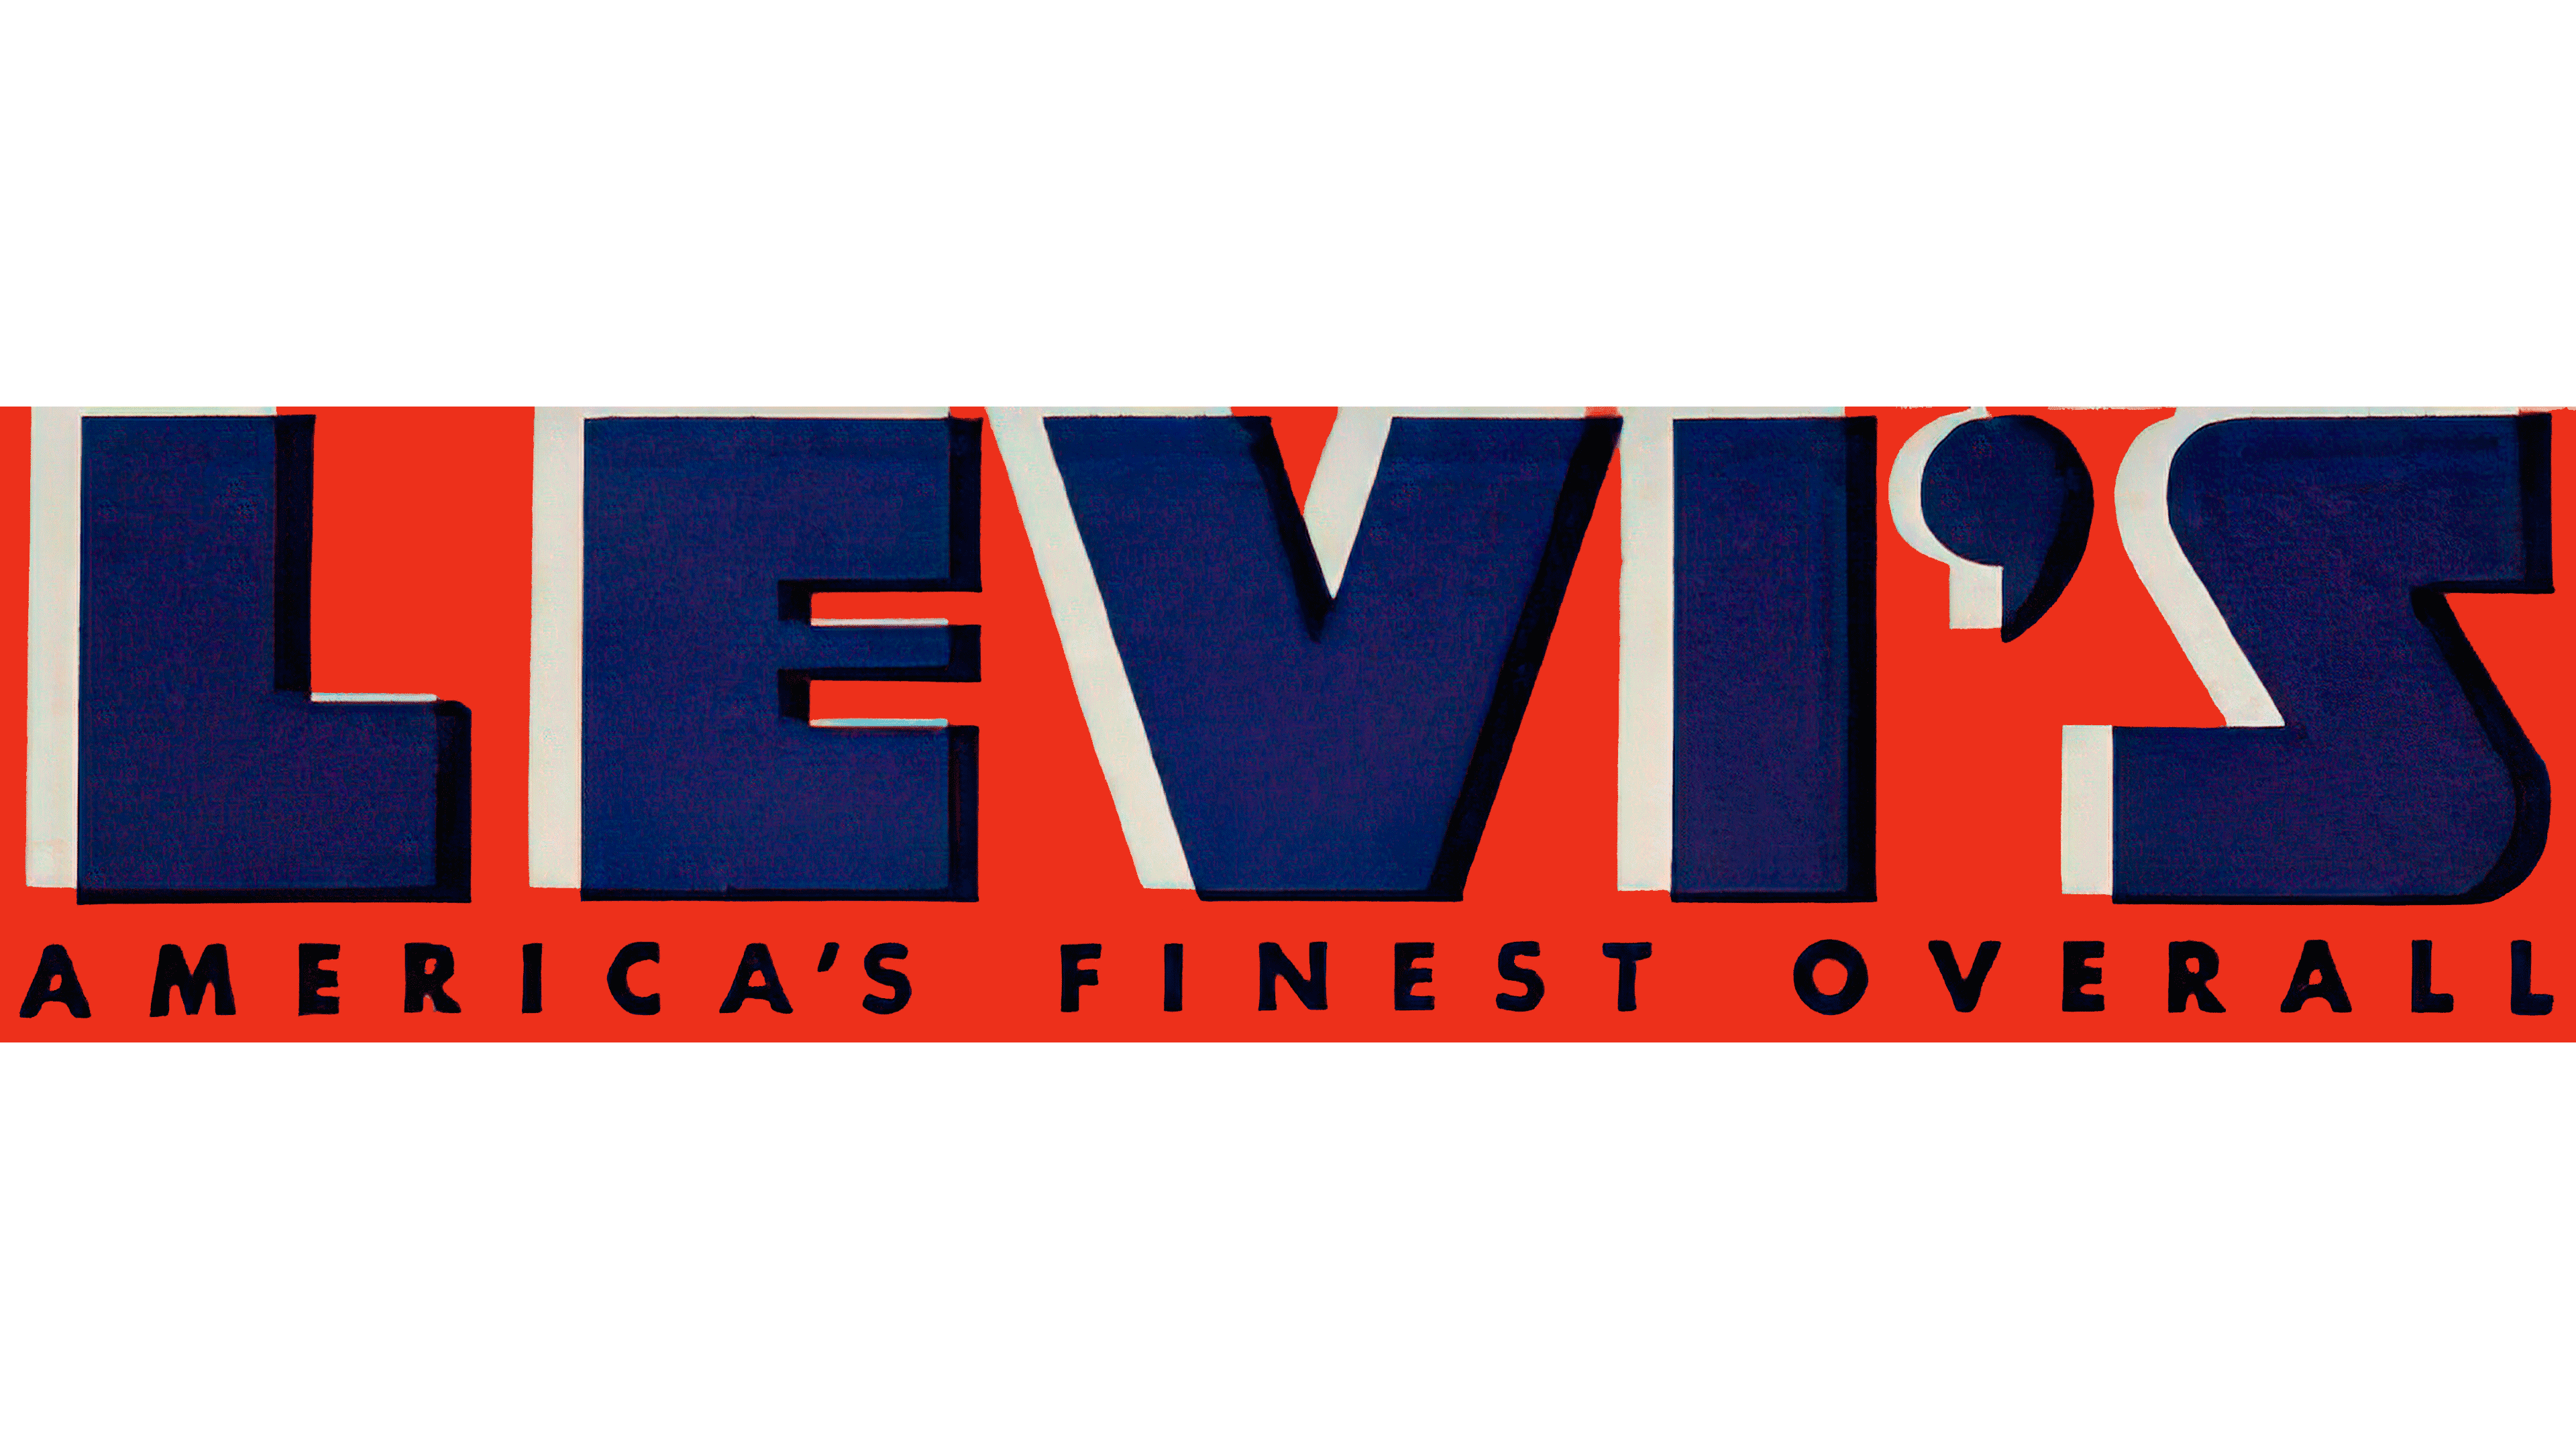 Levis Logo Png Logo Image for Free - Free Logo Image